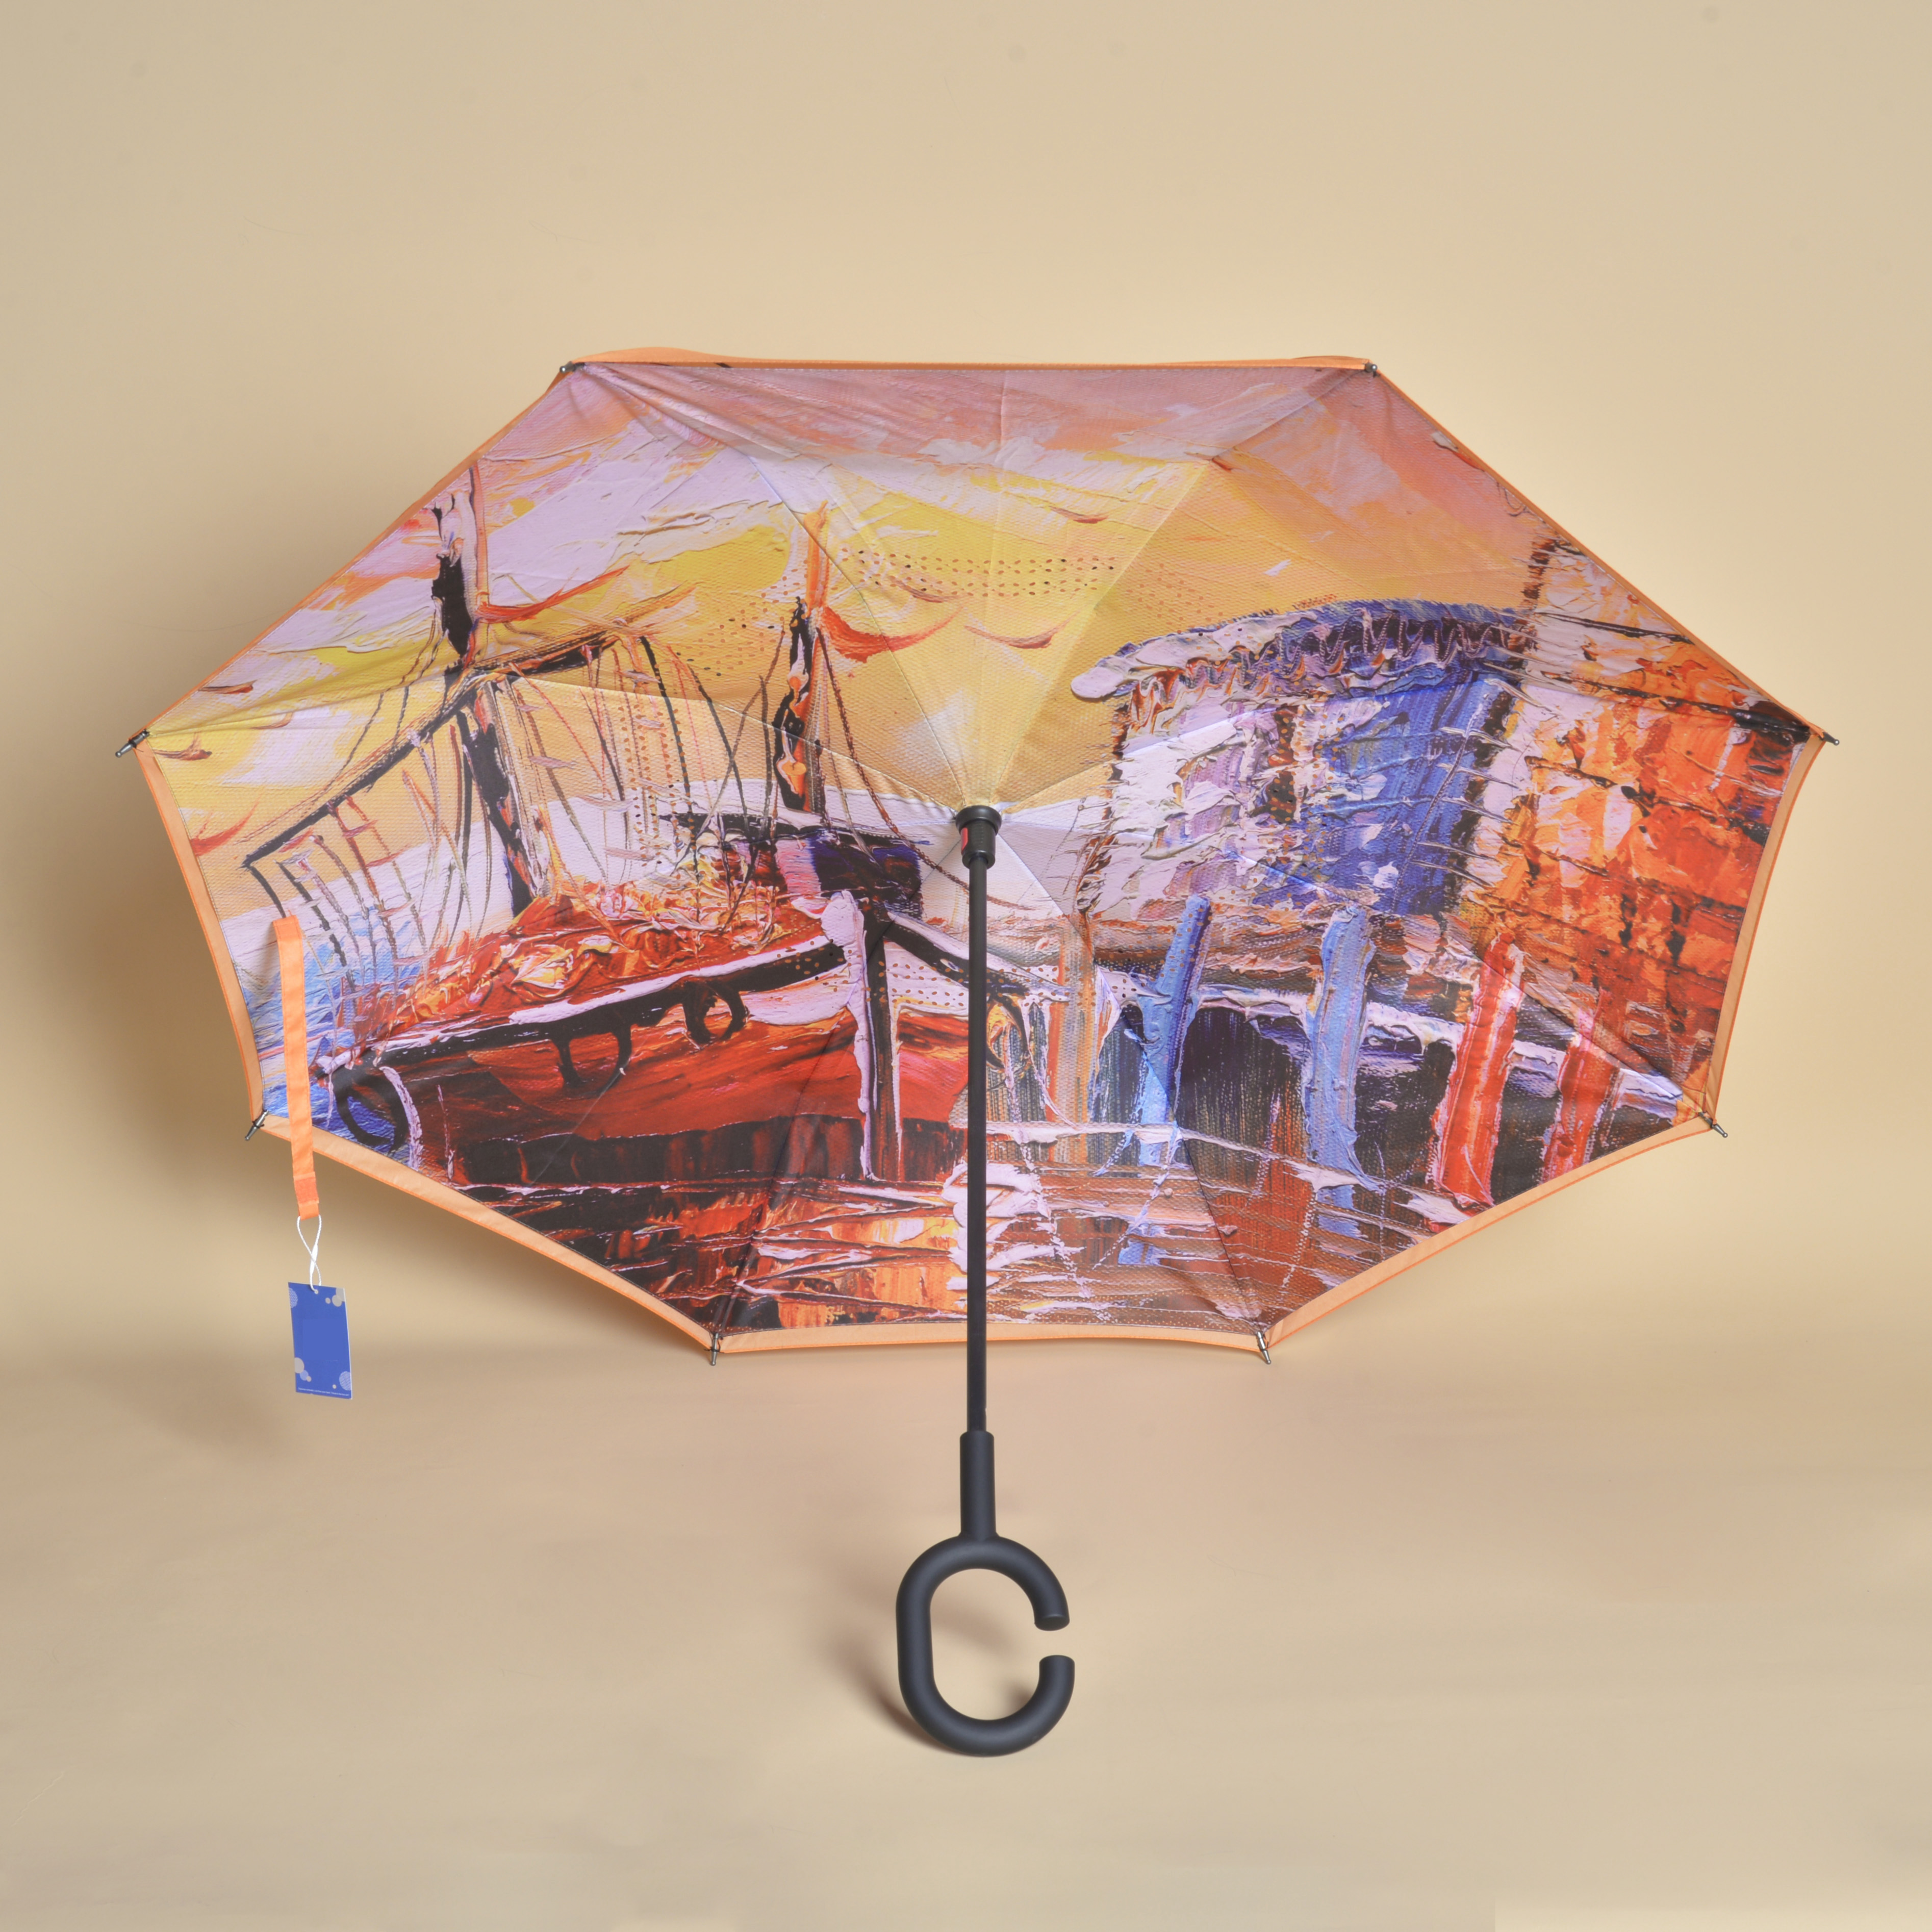 Rov qab Folding Windproof UV tiv thaiv Upside Down Umbrella